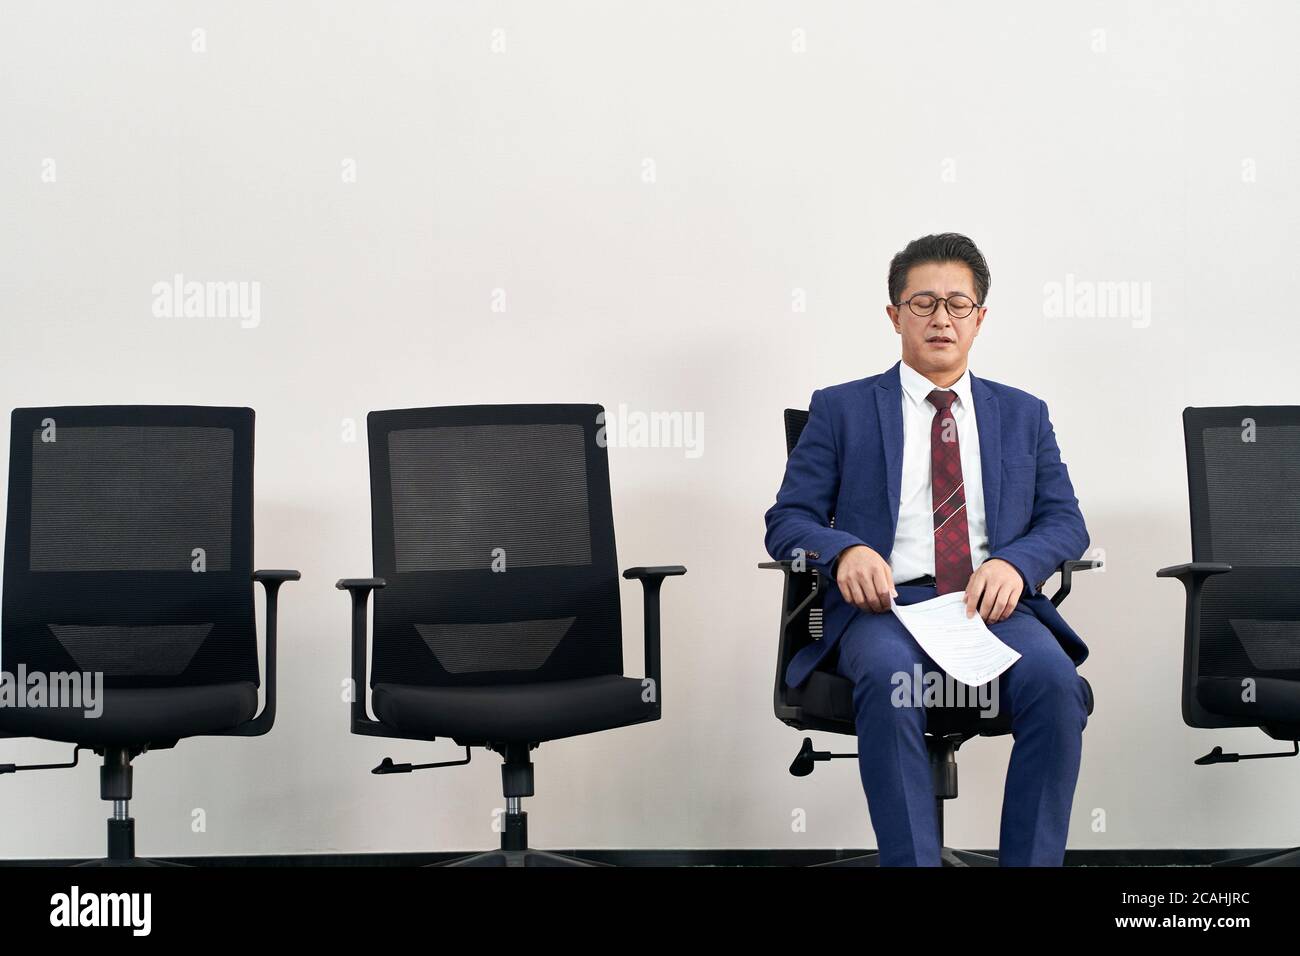 un candidat asiatique plus âgé se prépare à une entrevue avec les yeux fermés en attendant dans la file d'attente Banque D'Images